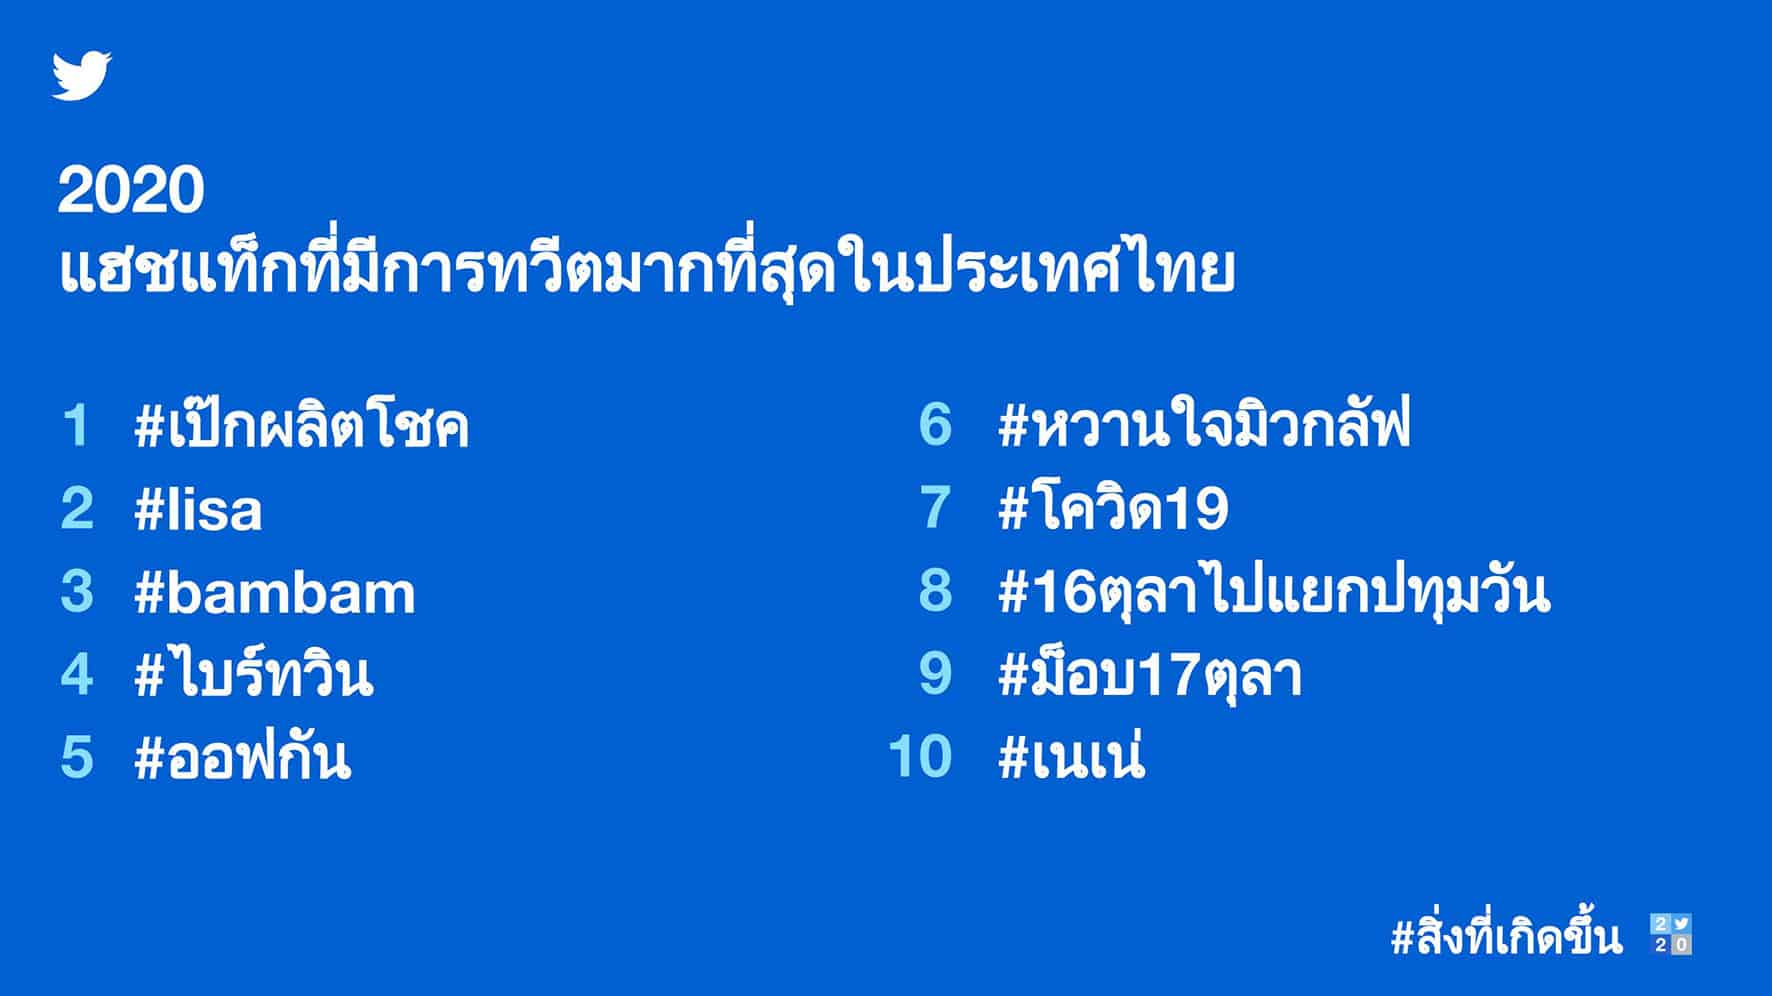 สรุปภาพรวม Twitter Thai 2020 ทวีตยอดนิยมแห่งปี แฮชแท็กที่ถูกทวีตมากที่สุด